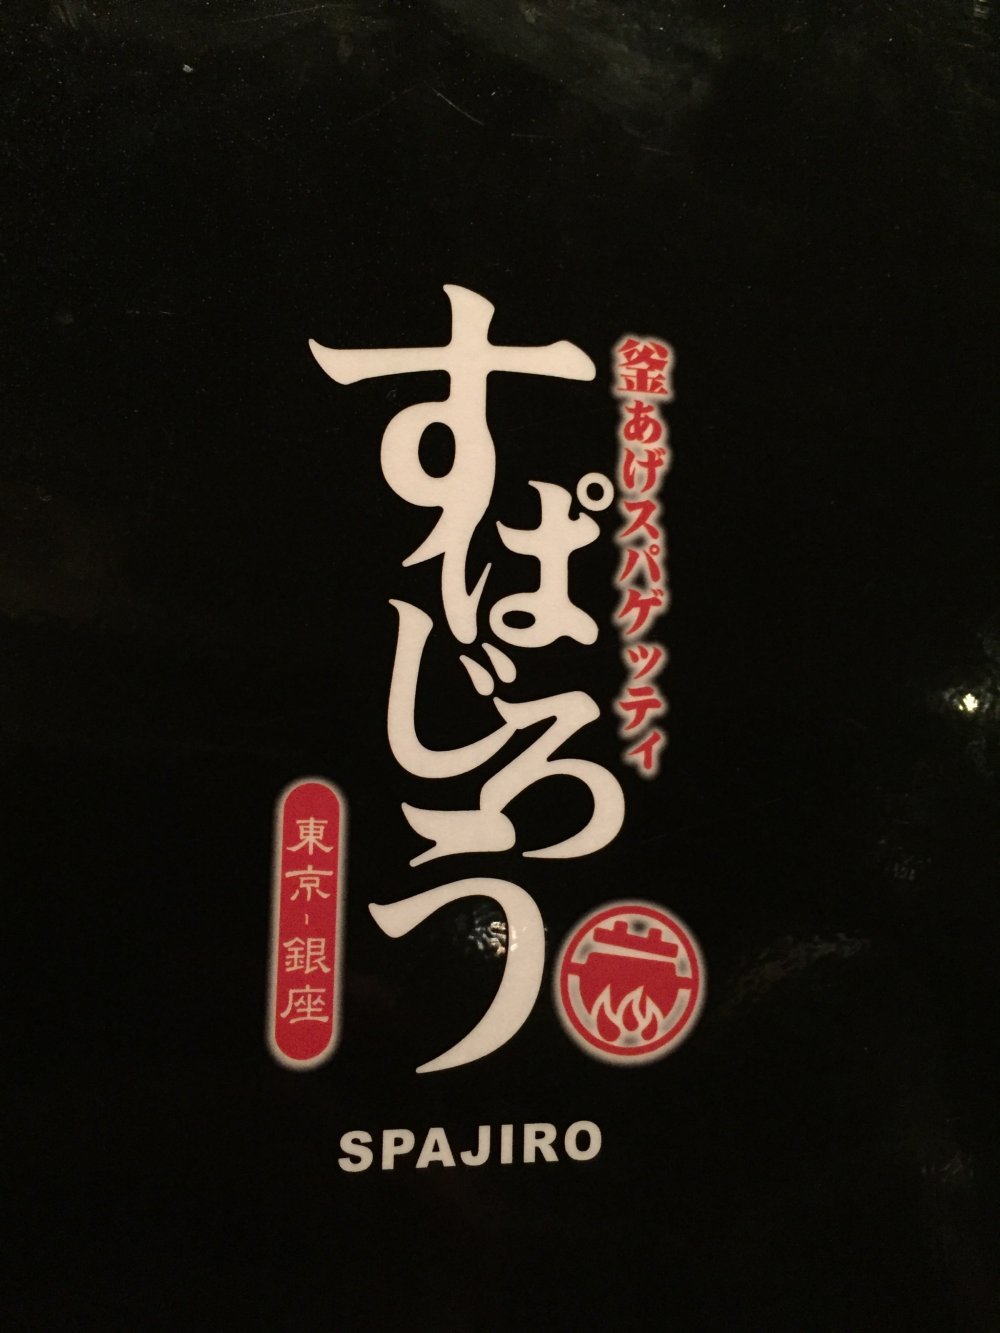 Spajiro là một chuỗi nhà hàng mì spaghetti nổi tiếng của Nhật